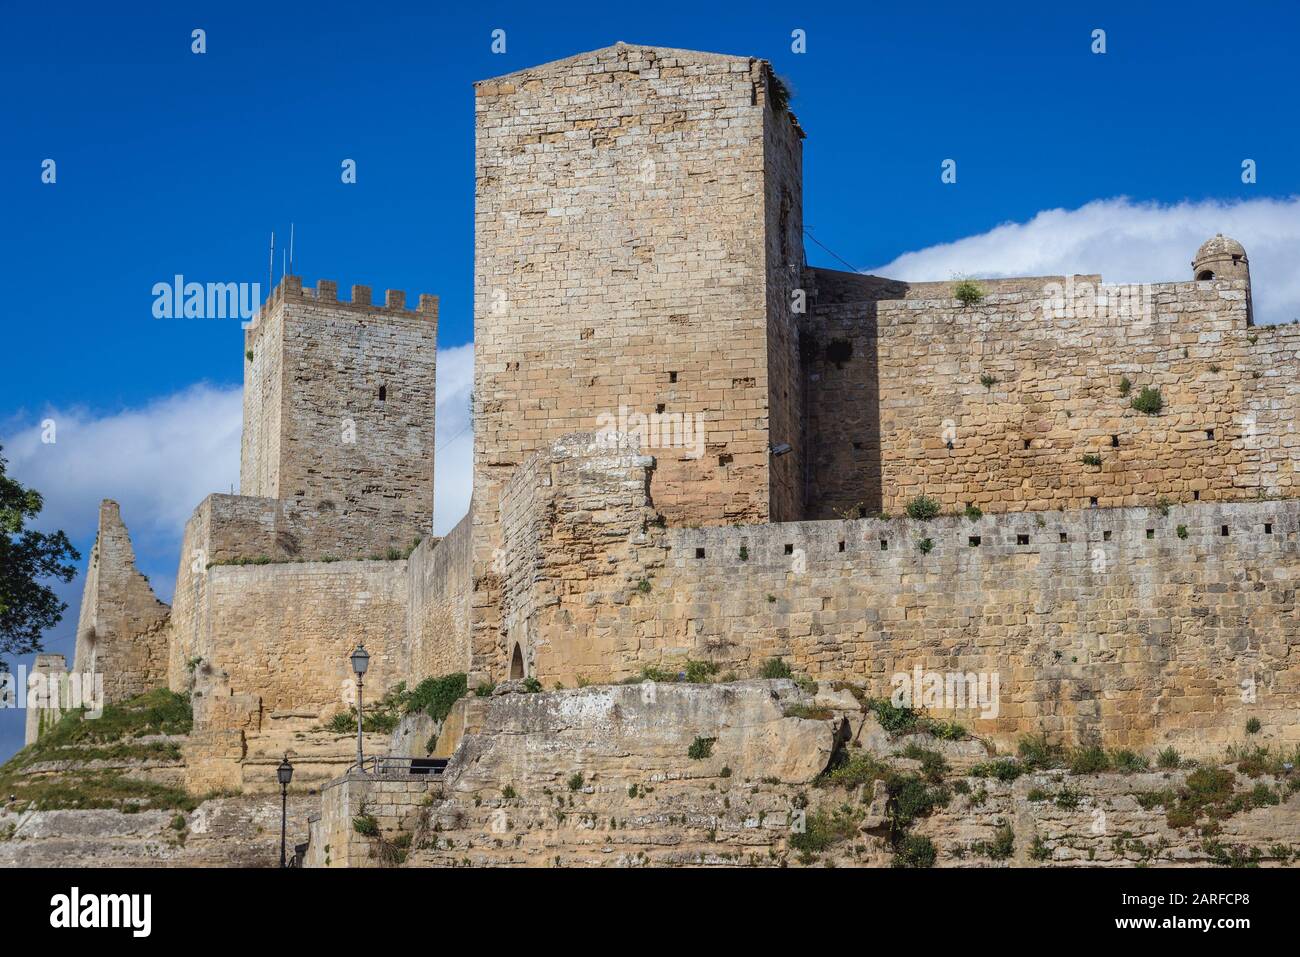 Vista exterior del Castello di Lombardia en la ciudad de Enna y la localidad de Comune situada en la provincia de Enna, en el centro de Sicilia, en el sur de Italia. Foto de stock